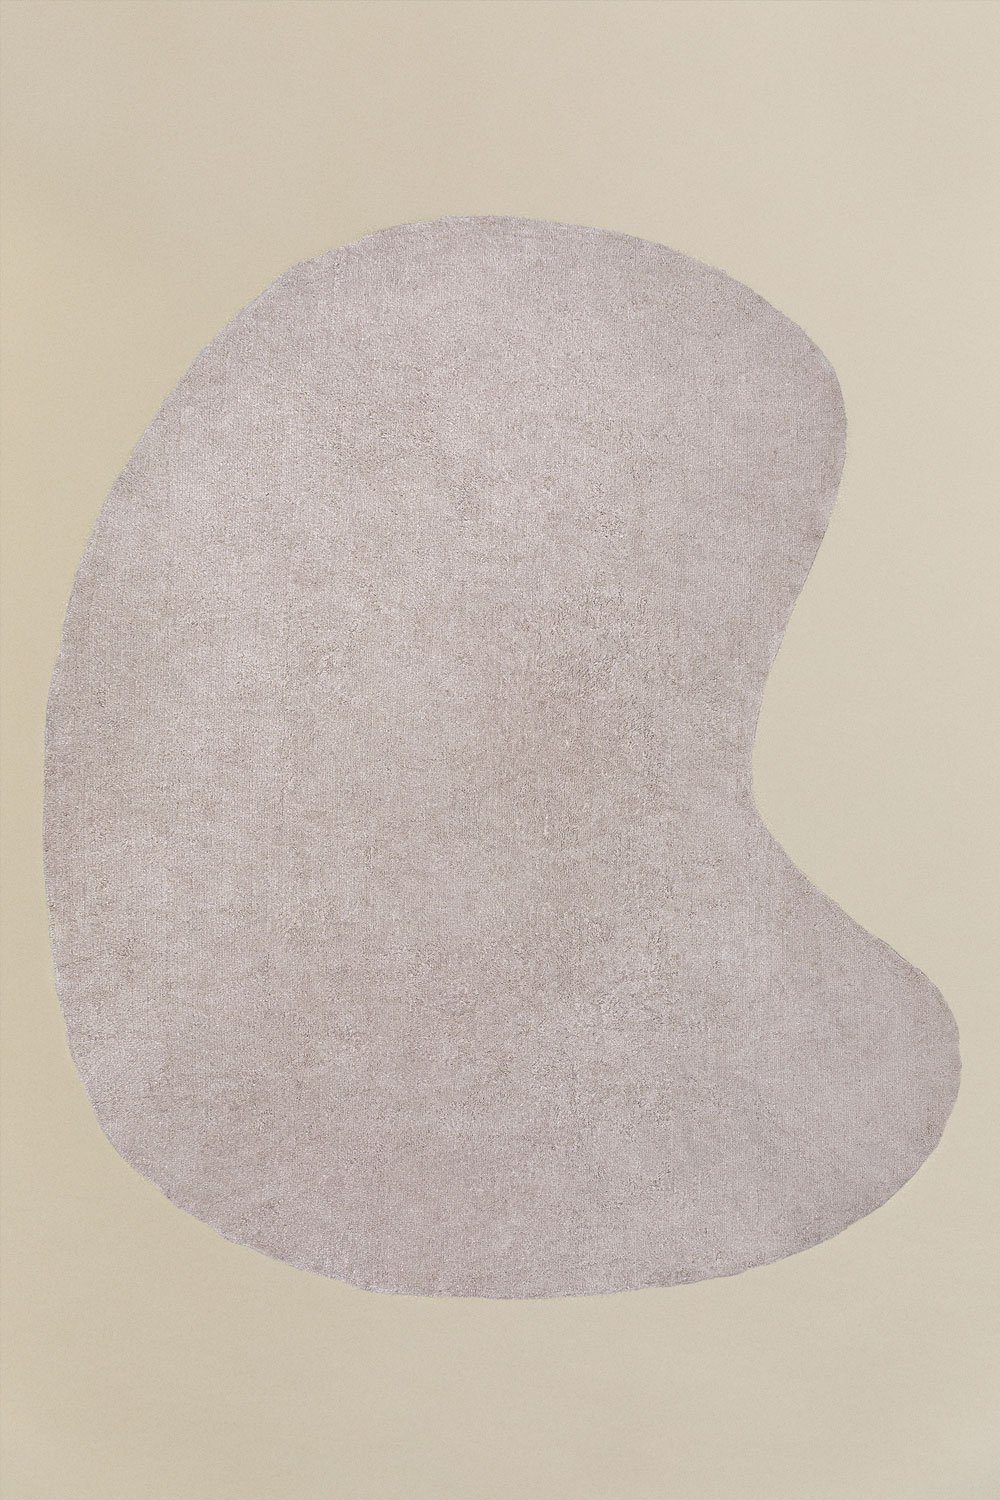 Tappeto in cotone (290x250 cm) Francine, immagine della galleria 1